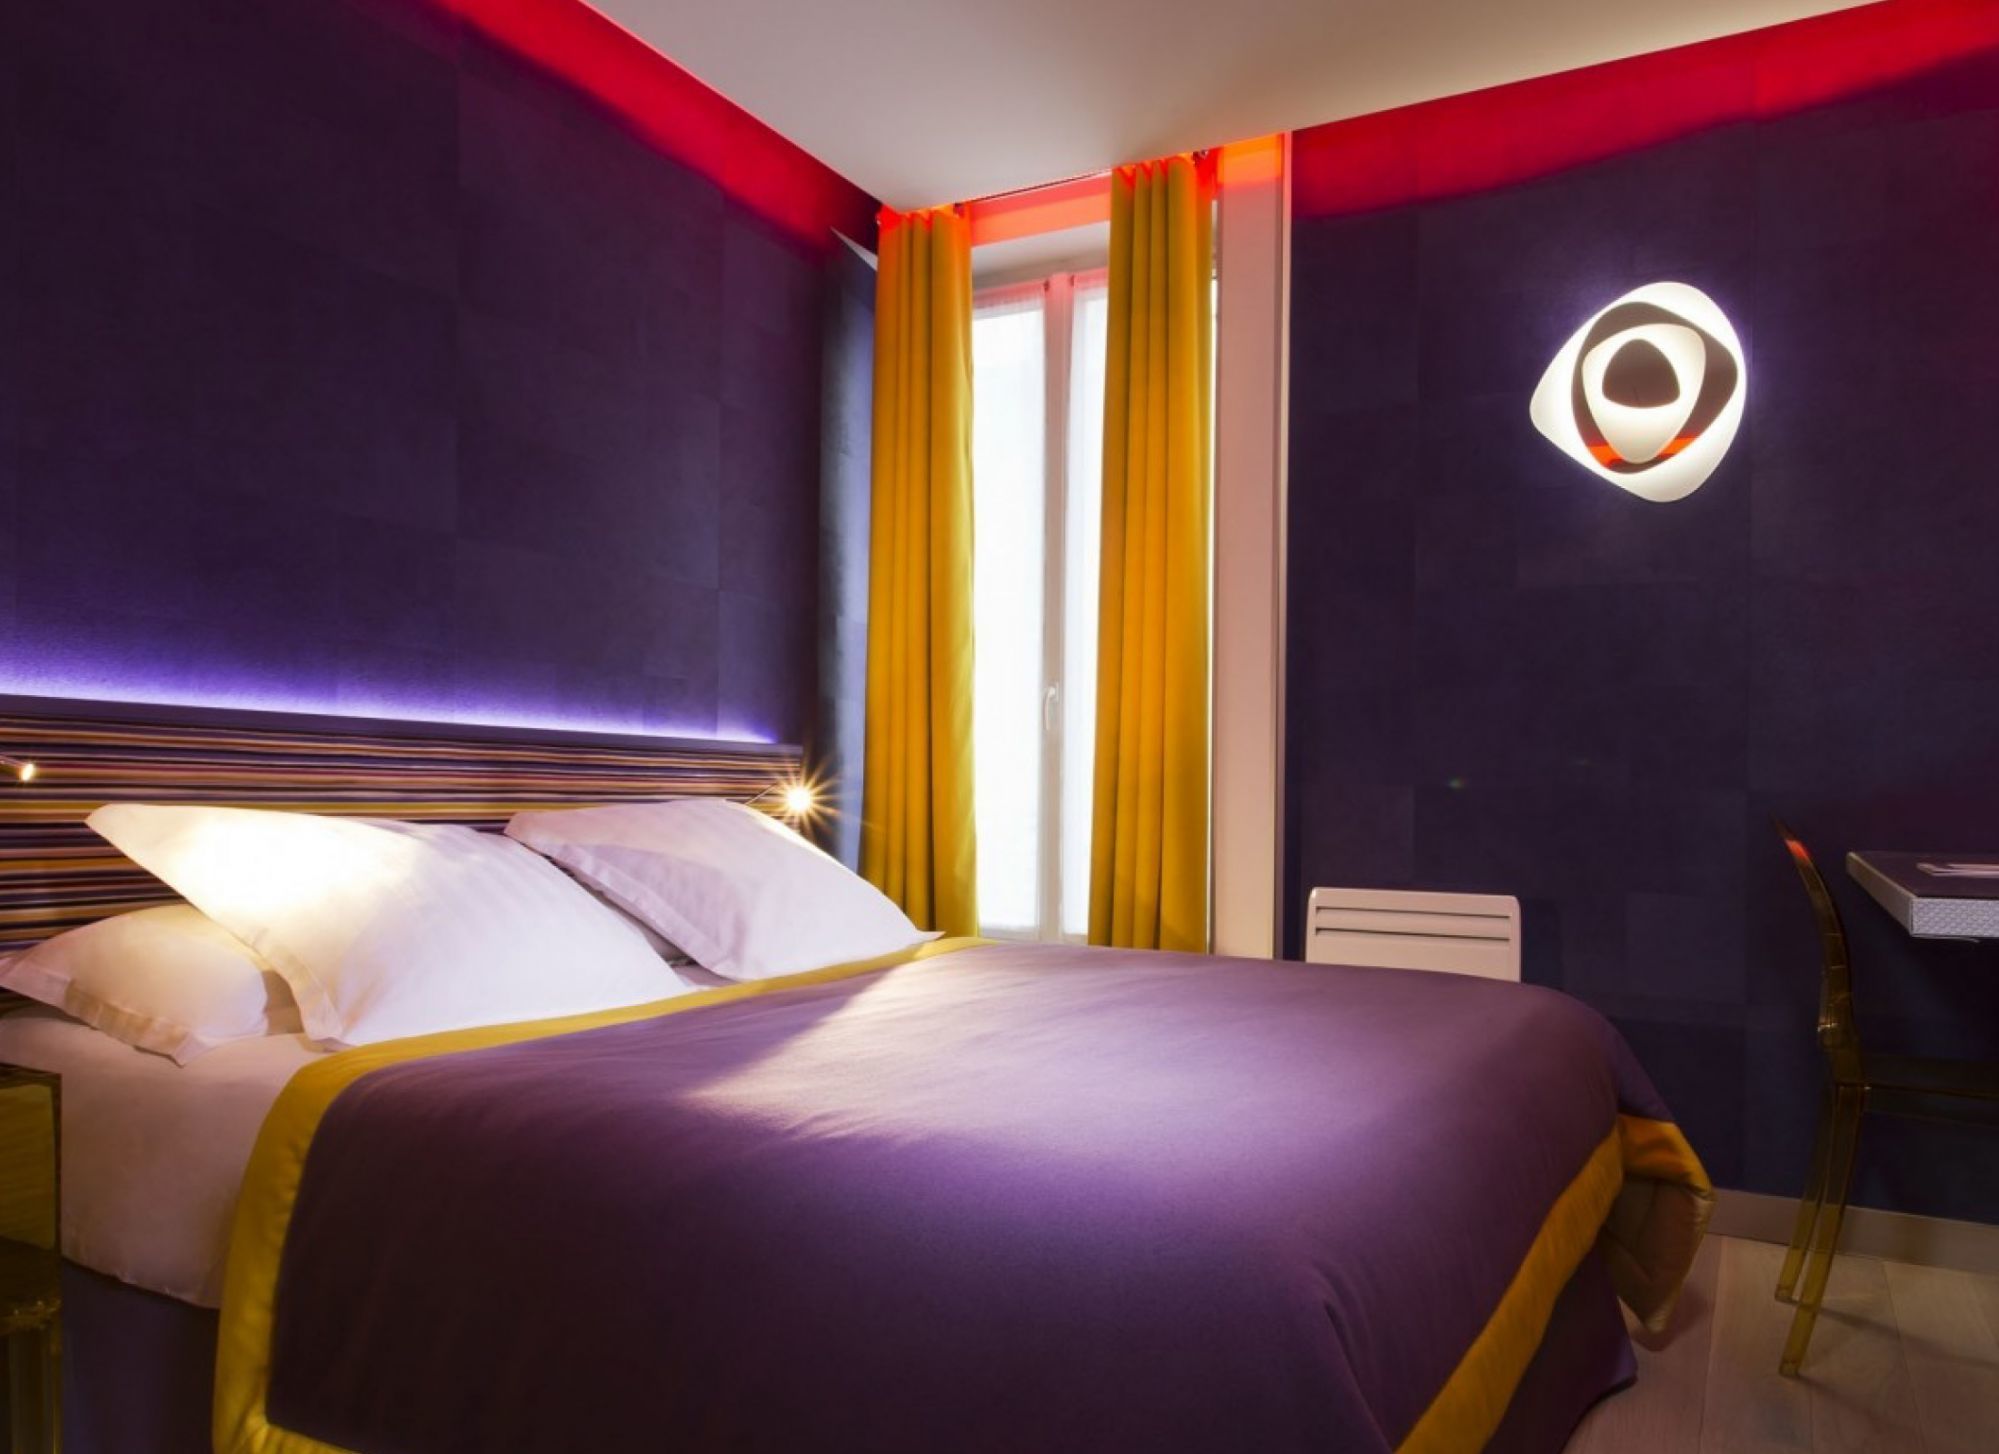 Hotel Moderne Saint Germain - Room